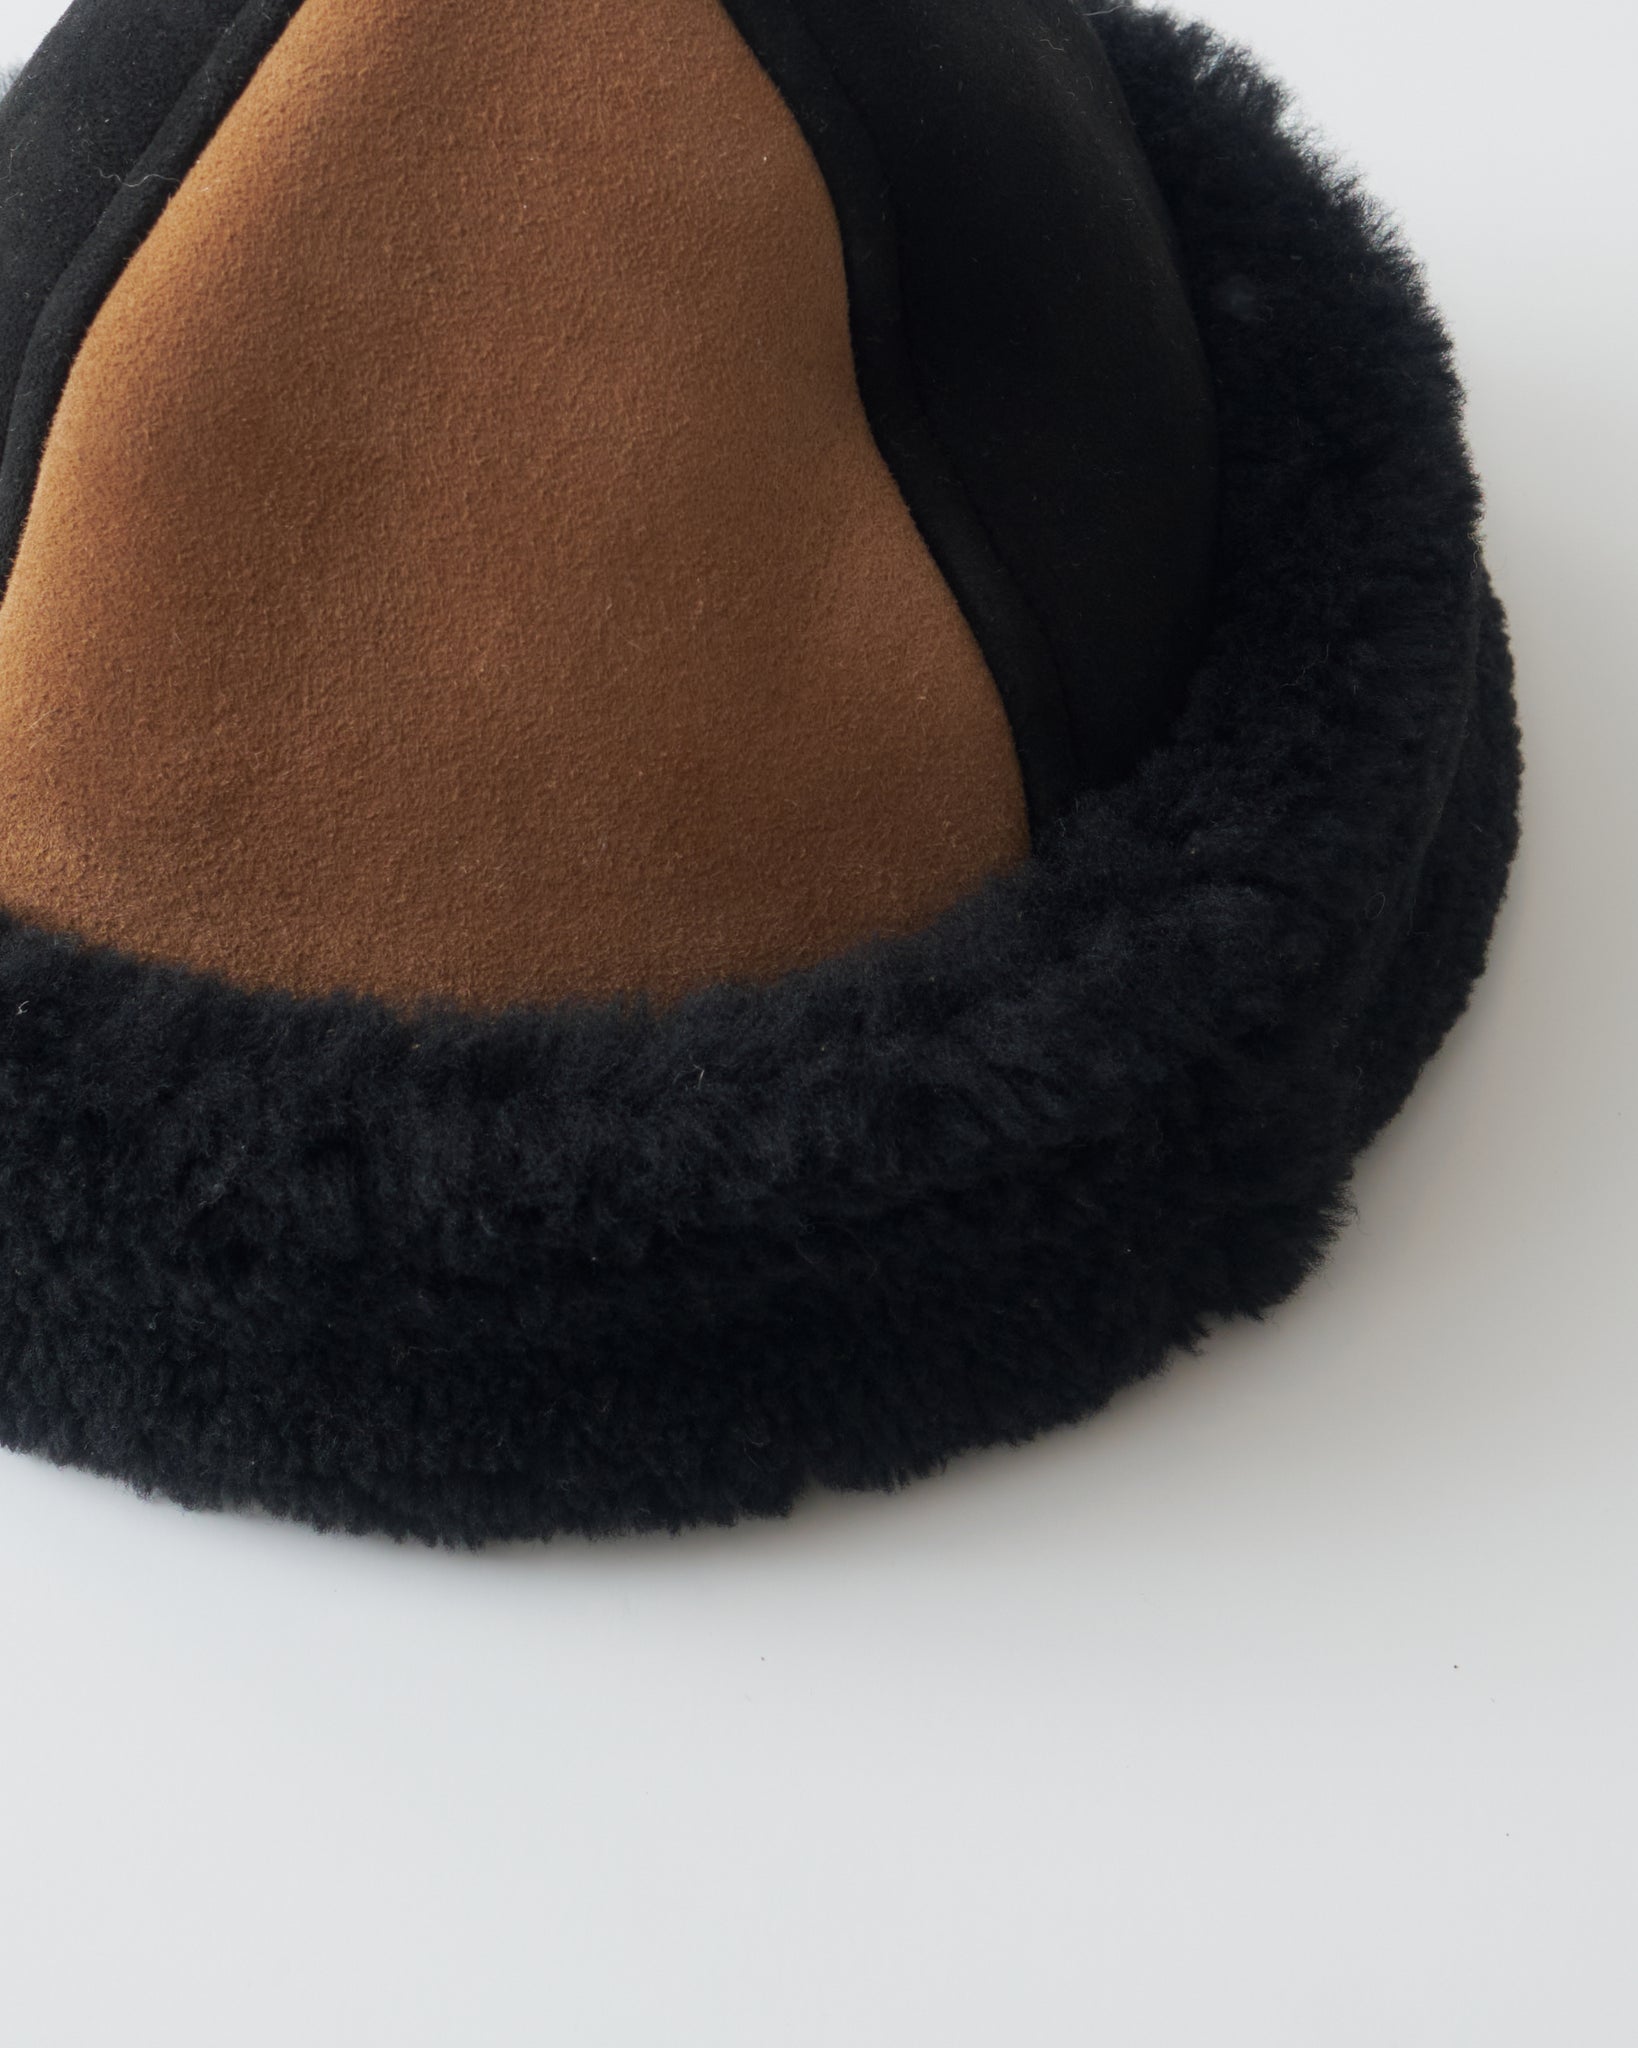 Panel Sheepskin Hat, Tan + Black